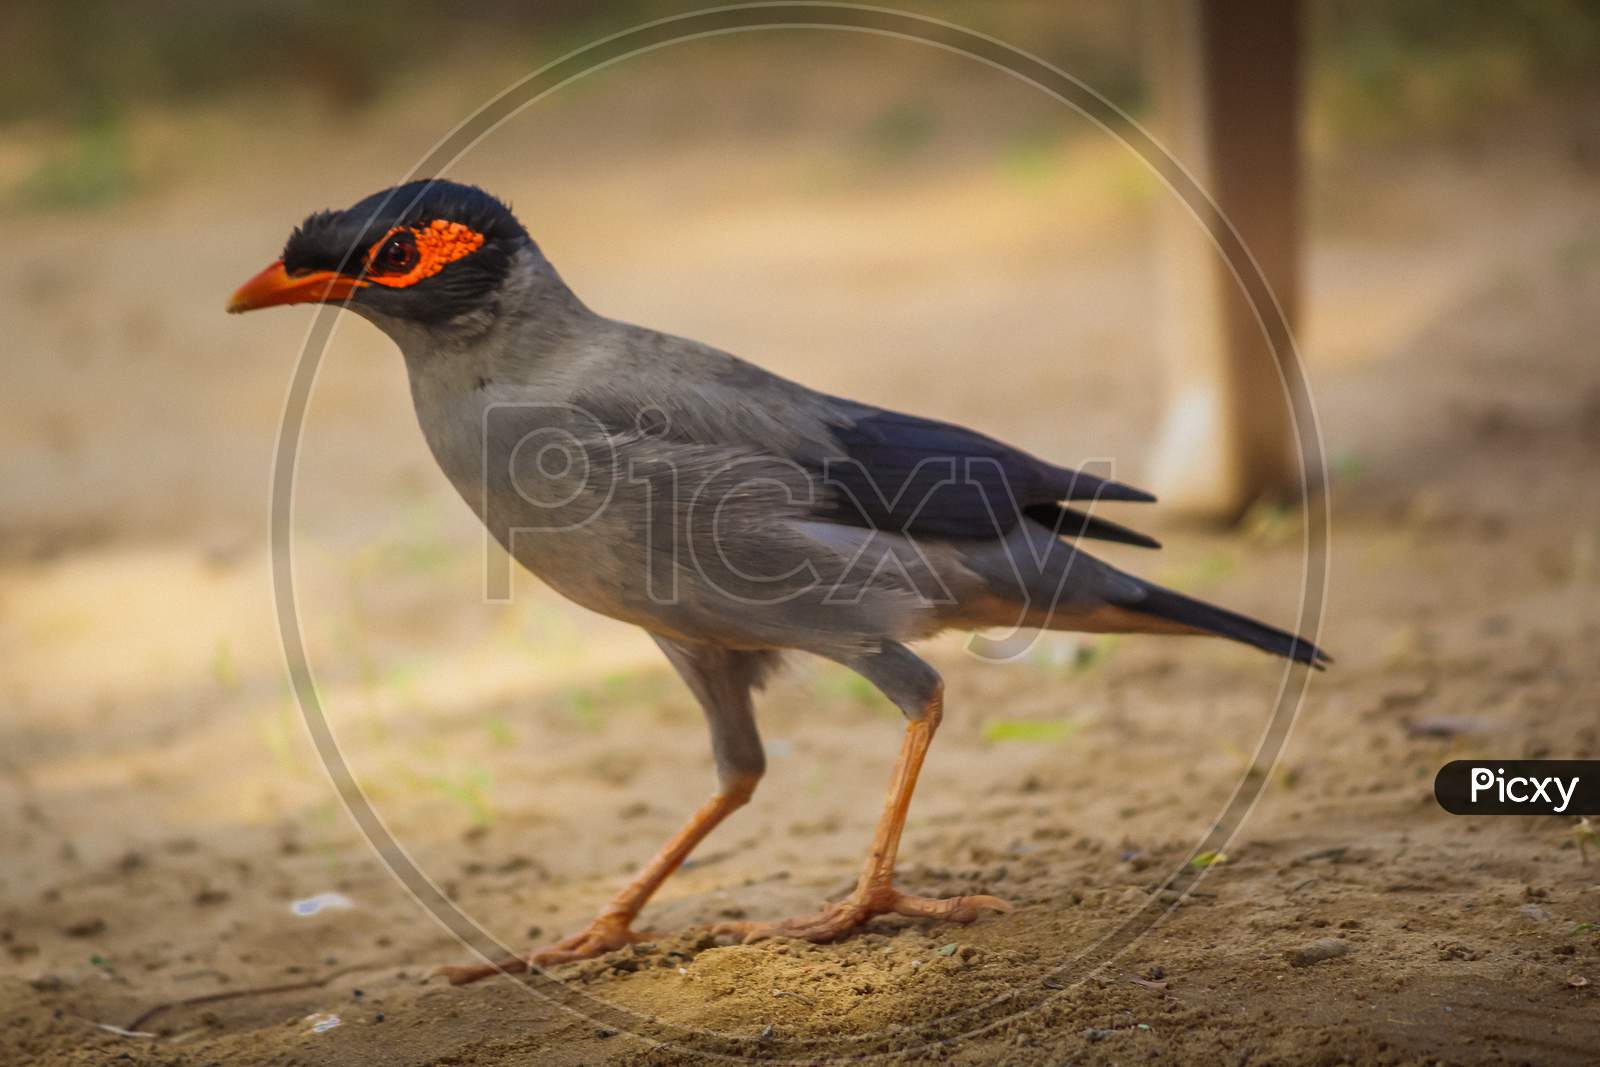 Common myna bird on ground